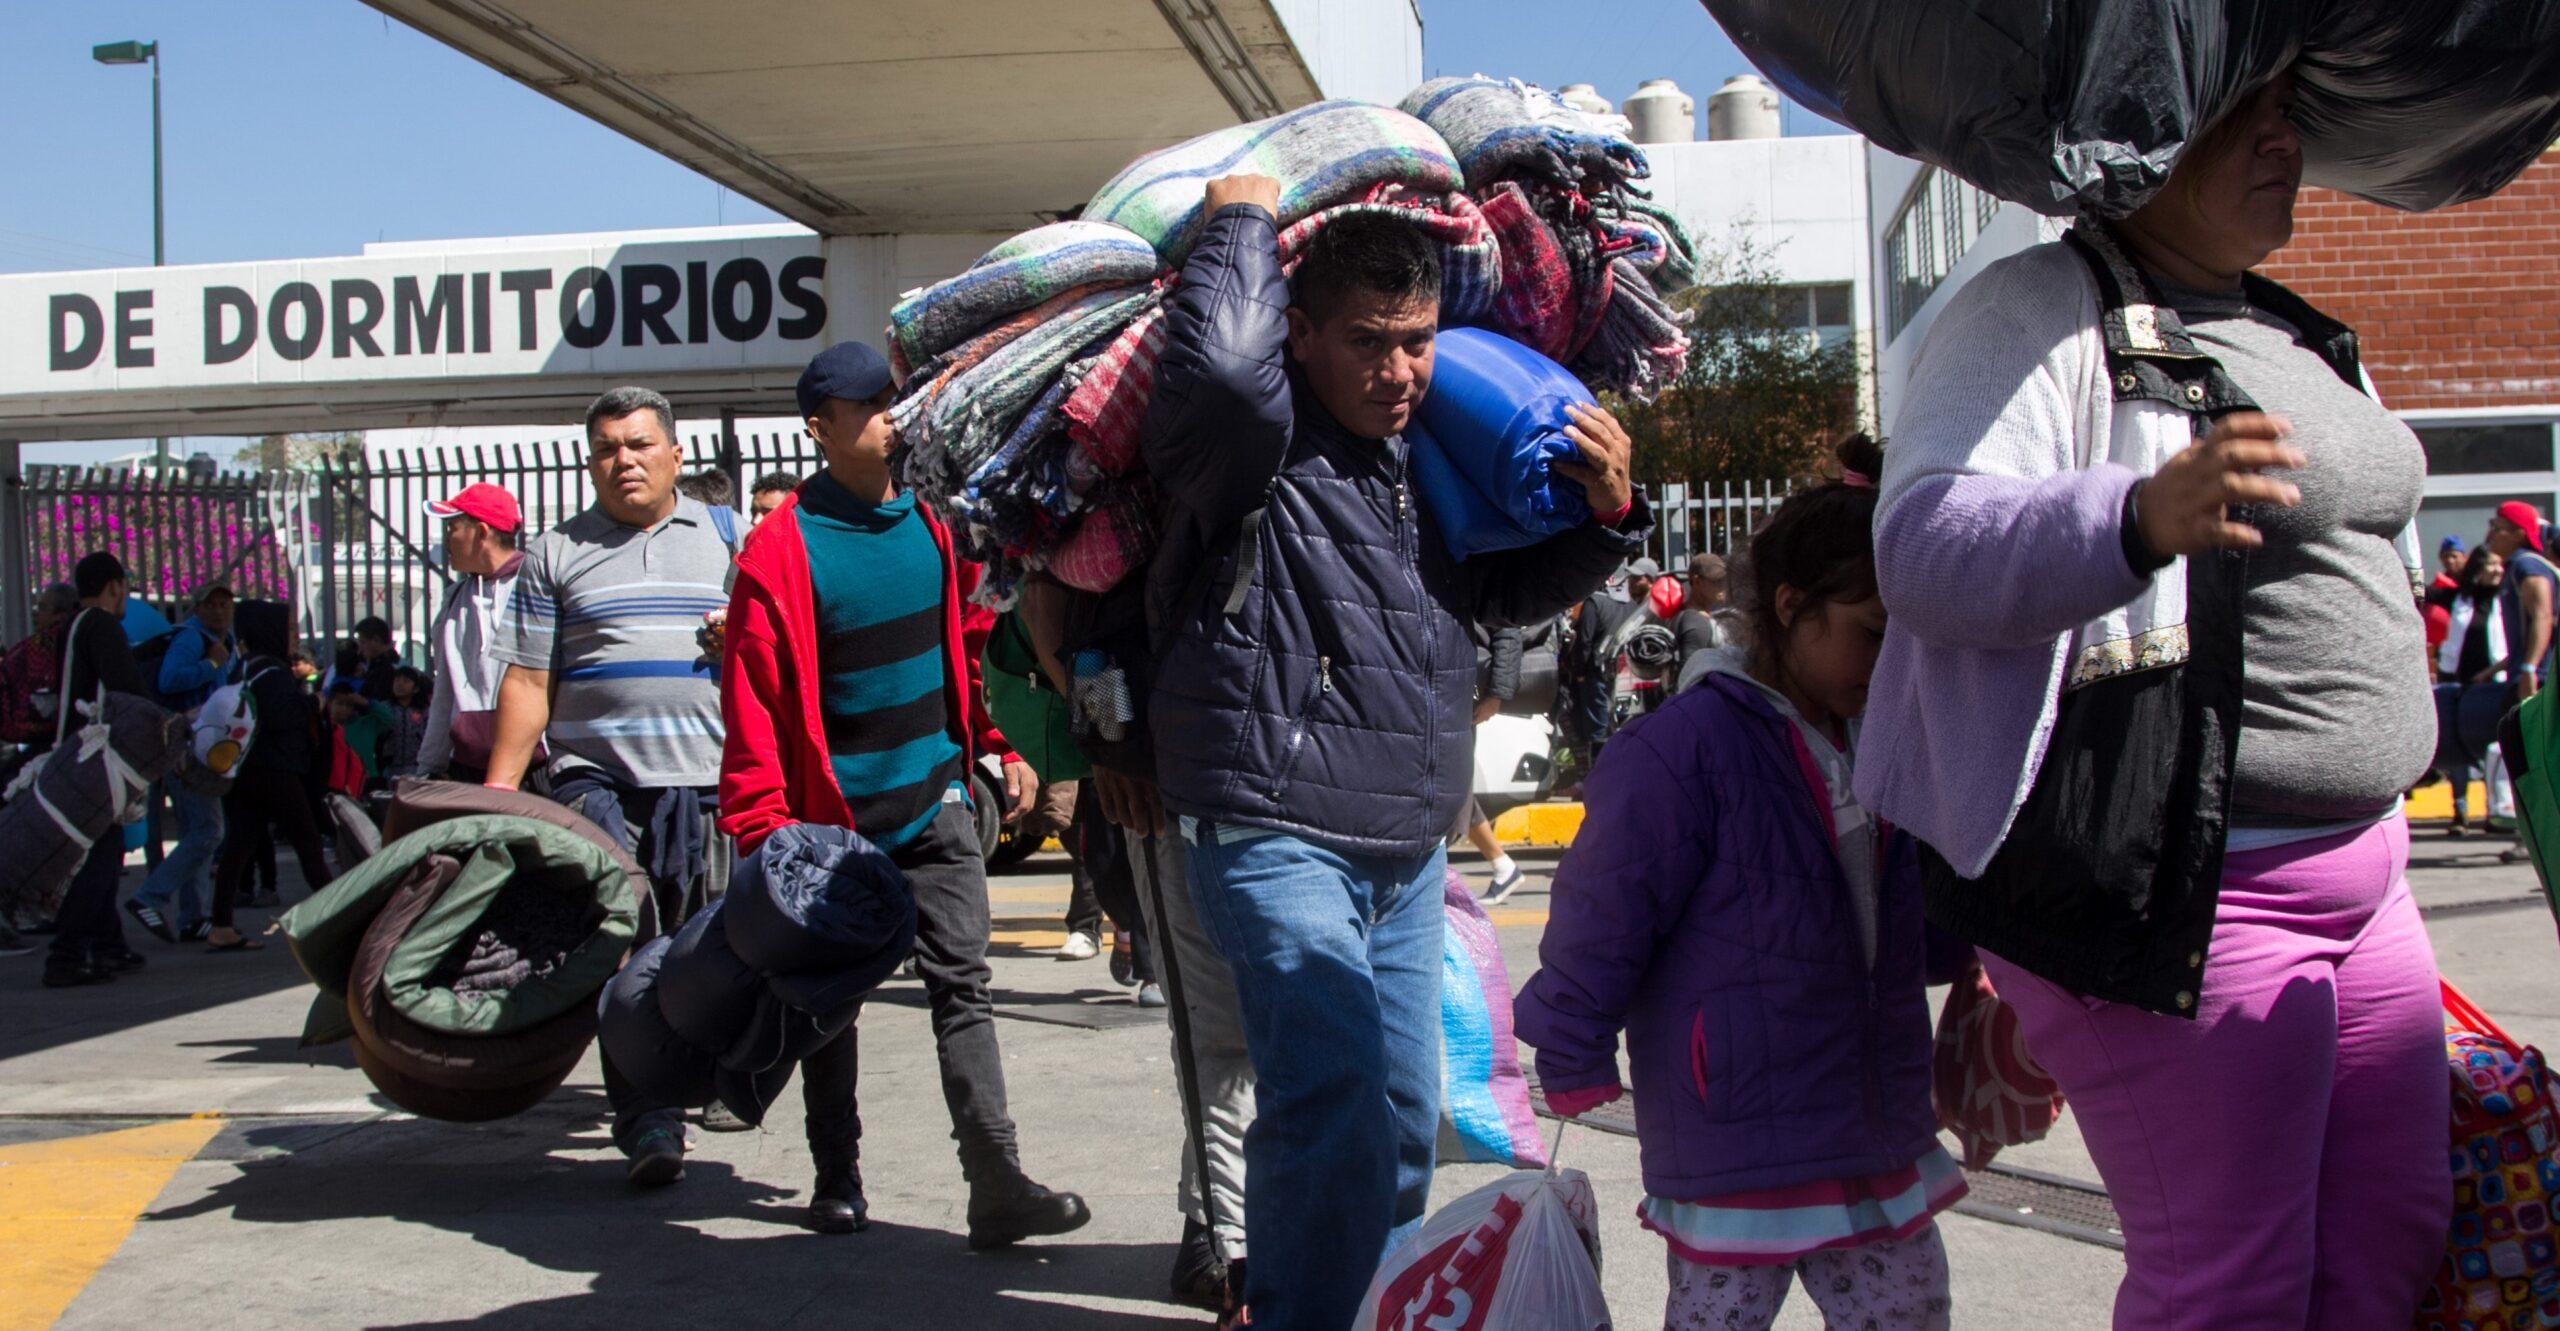 EU expulsa 240 migrantes centroamericanos a México desde enero, mientras tramitan asilo